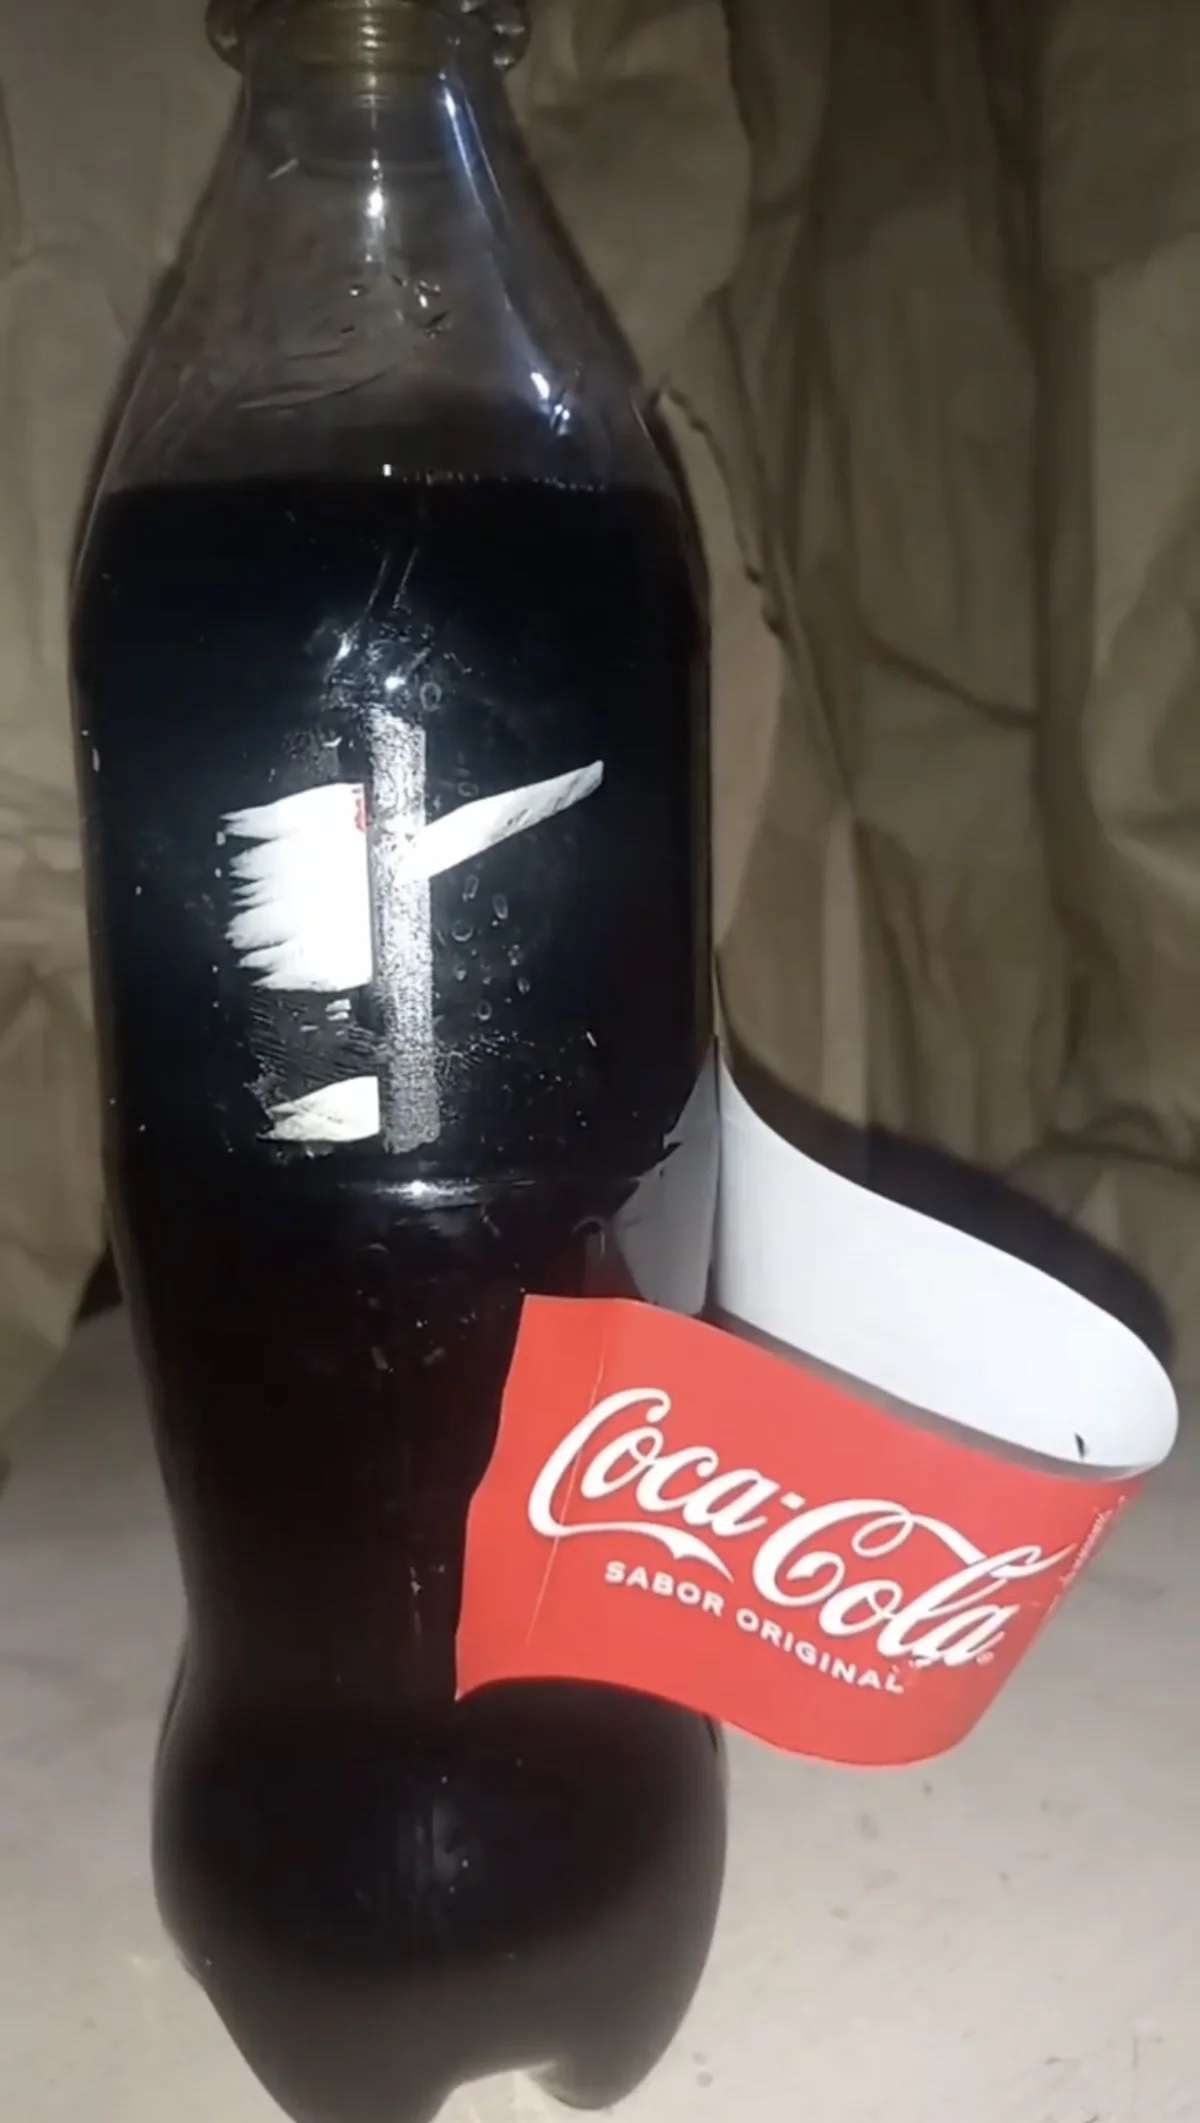 Alerta en redes sociales: Coca-Cola pirata presuntamente distribuida en tiendas de Hidalgo